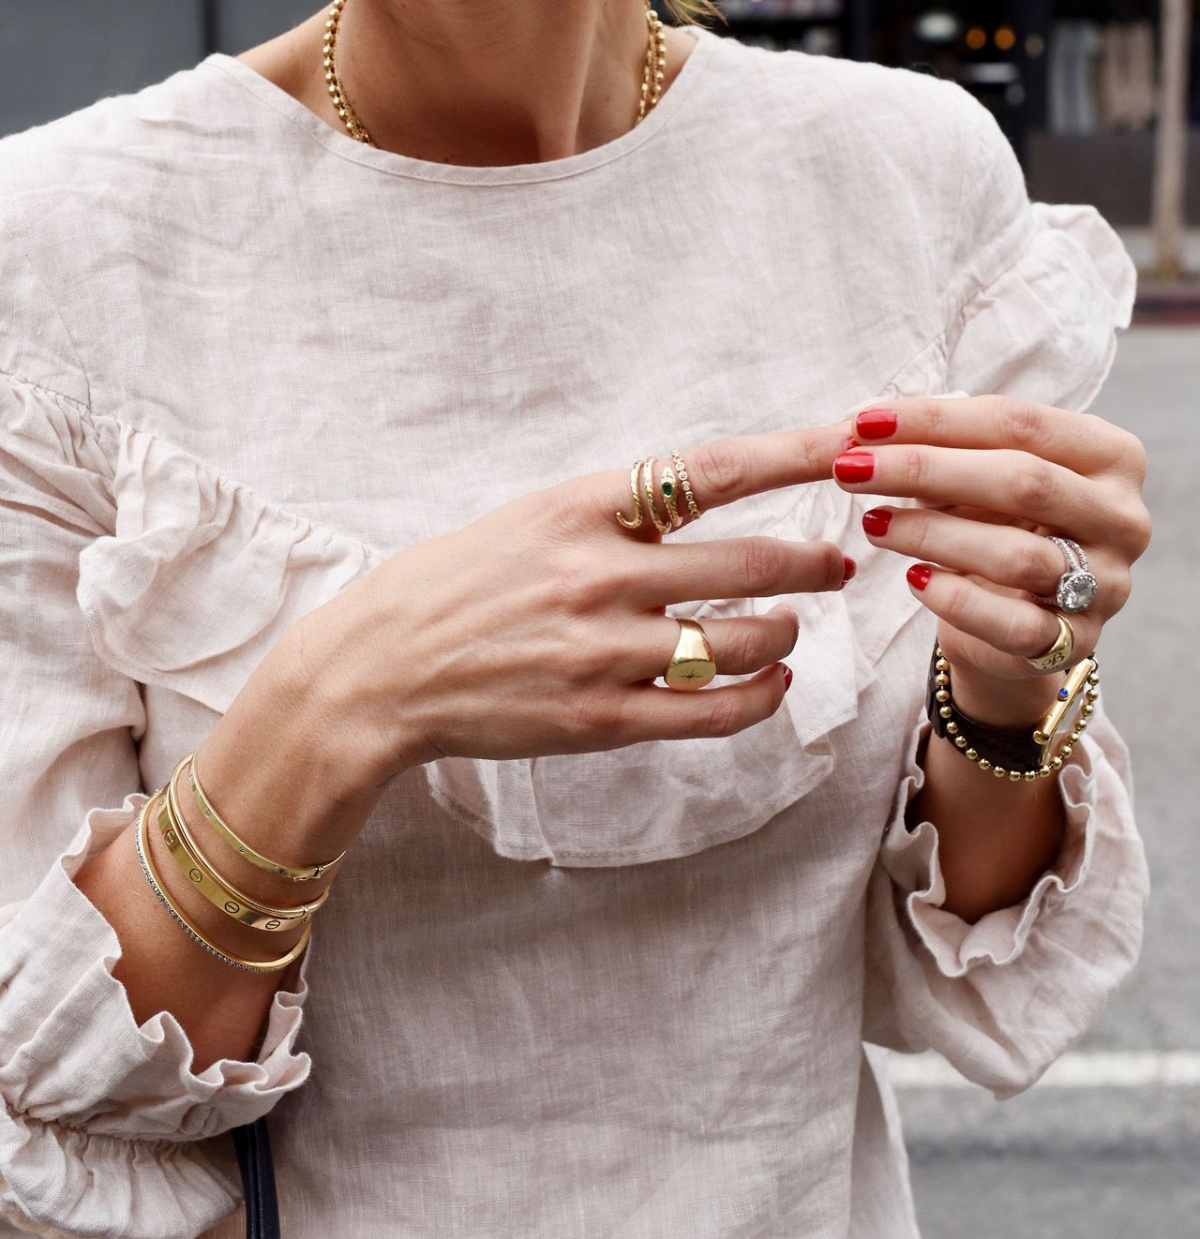 decorazioni unghie semplici donna con smalto rosso